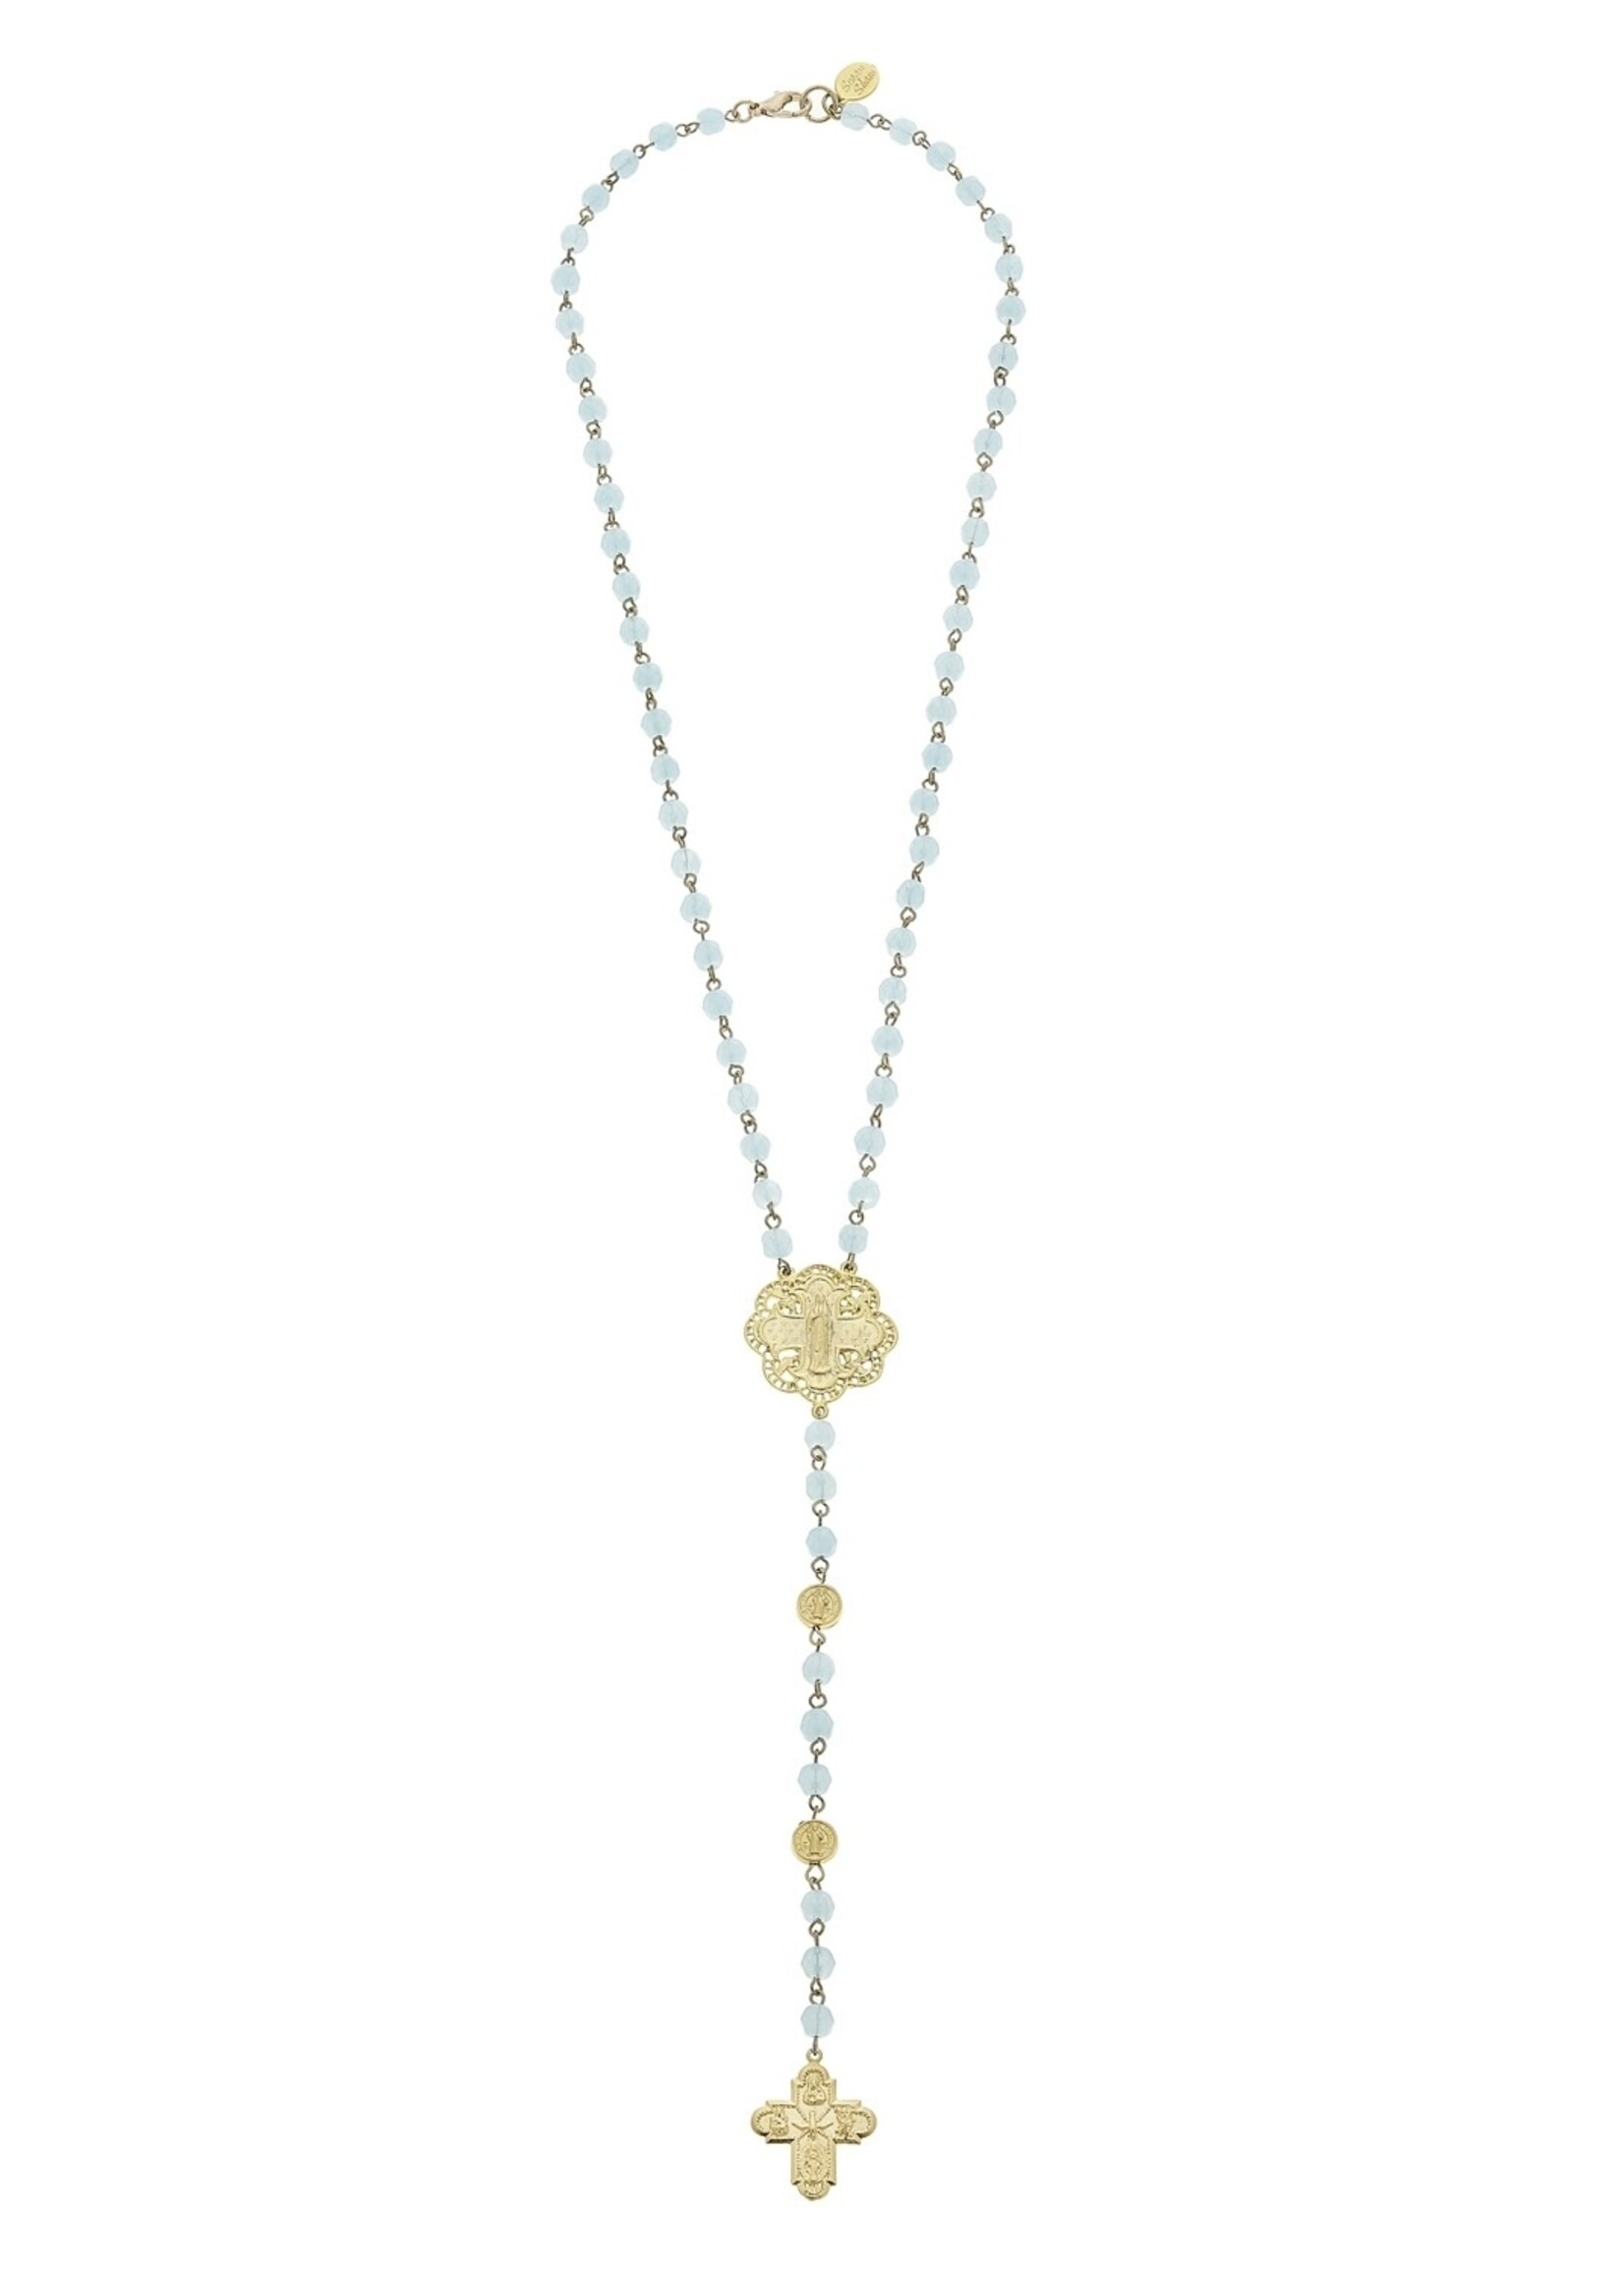 Susan Shaw Aqua Y Gold Cross Necklace